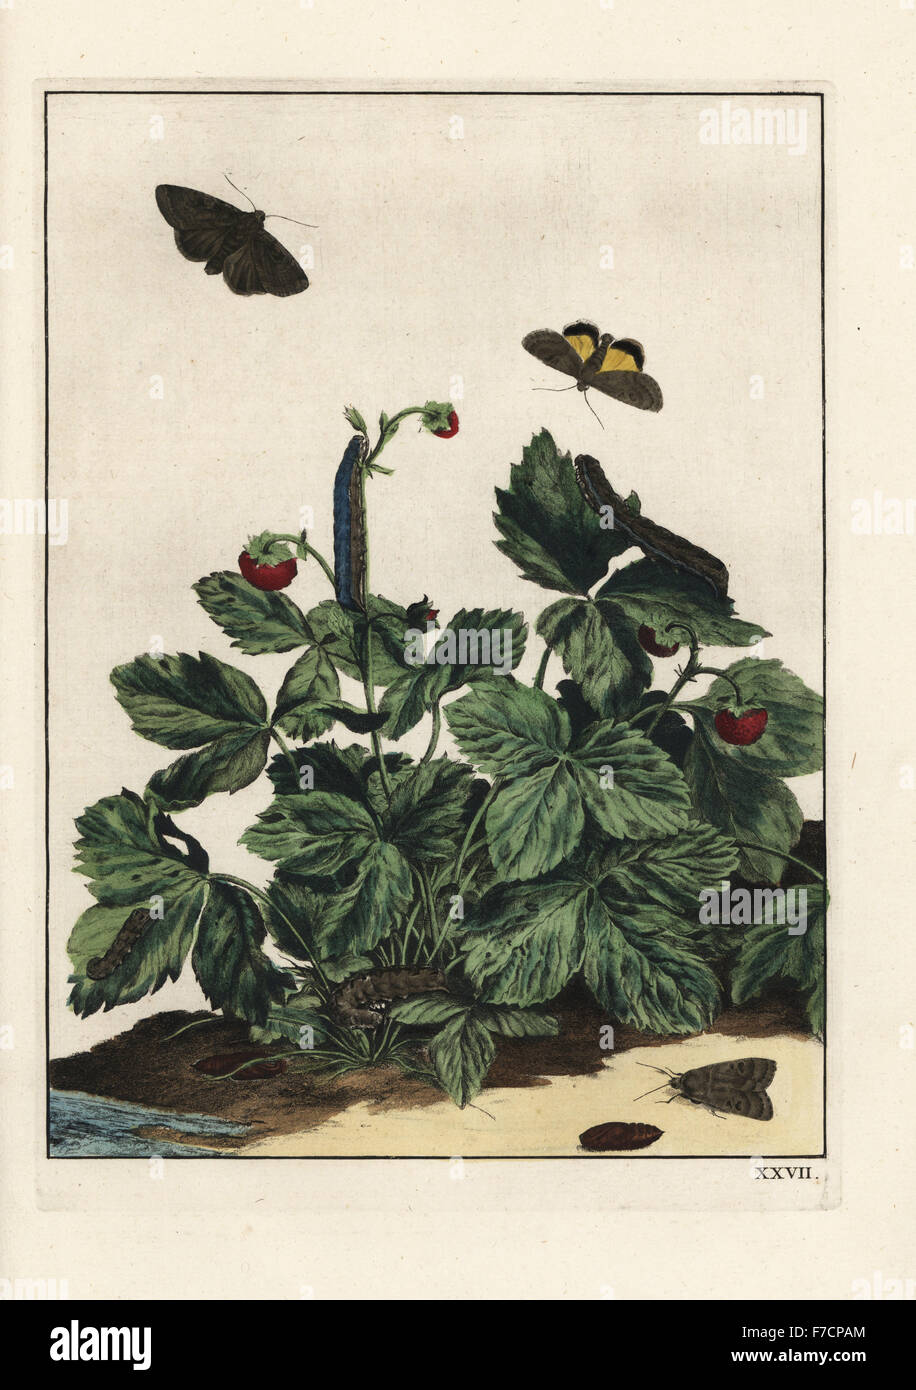 Willowherb sphynx, Proserpinus proserpine, sur une fraise Fragaria × ananassa, bush. Coloriée à la gravure sur cuivre gravé et dessiné par Jacob l'Naauwkeurige Waarneemingen dans l'amiral omtrent de veranderingen van veele Insekten (des descriptions précises de la métamorphose d'insectes), J. Sluyter, Amsterdam, 1774. Pour cette deuxième édition, M. Houttuyn ajouté un autre huit plaques pour l'original 25. Banque D'Images